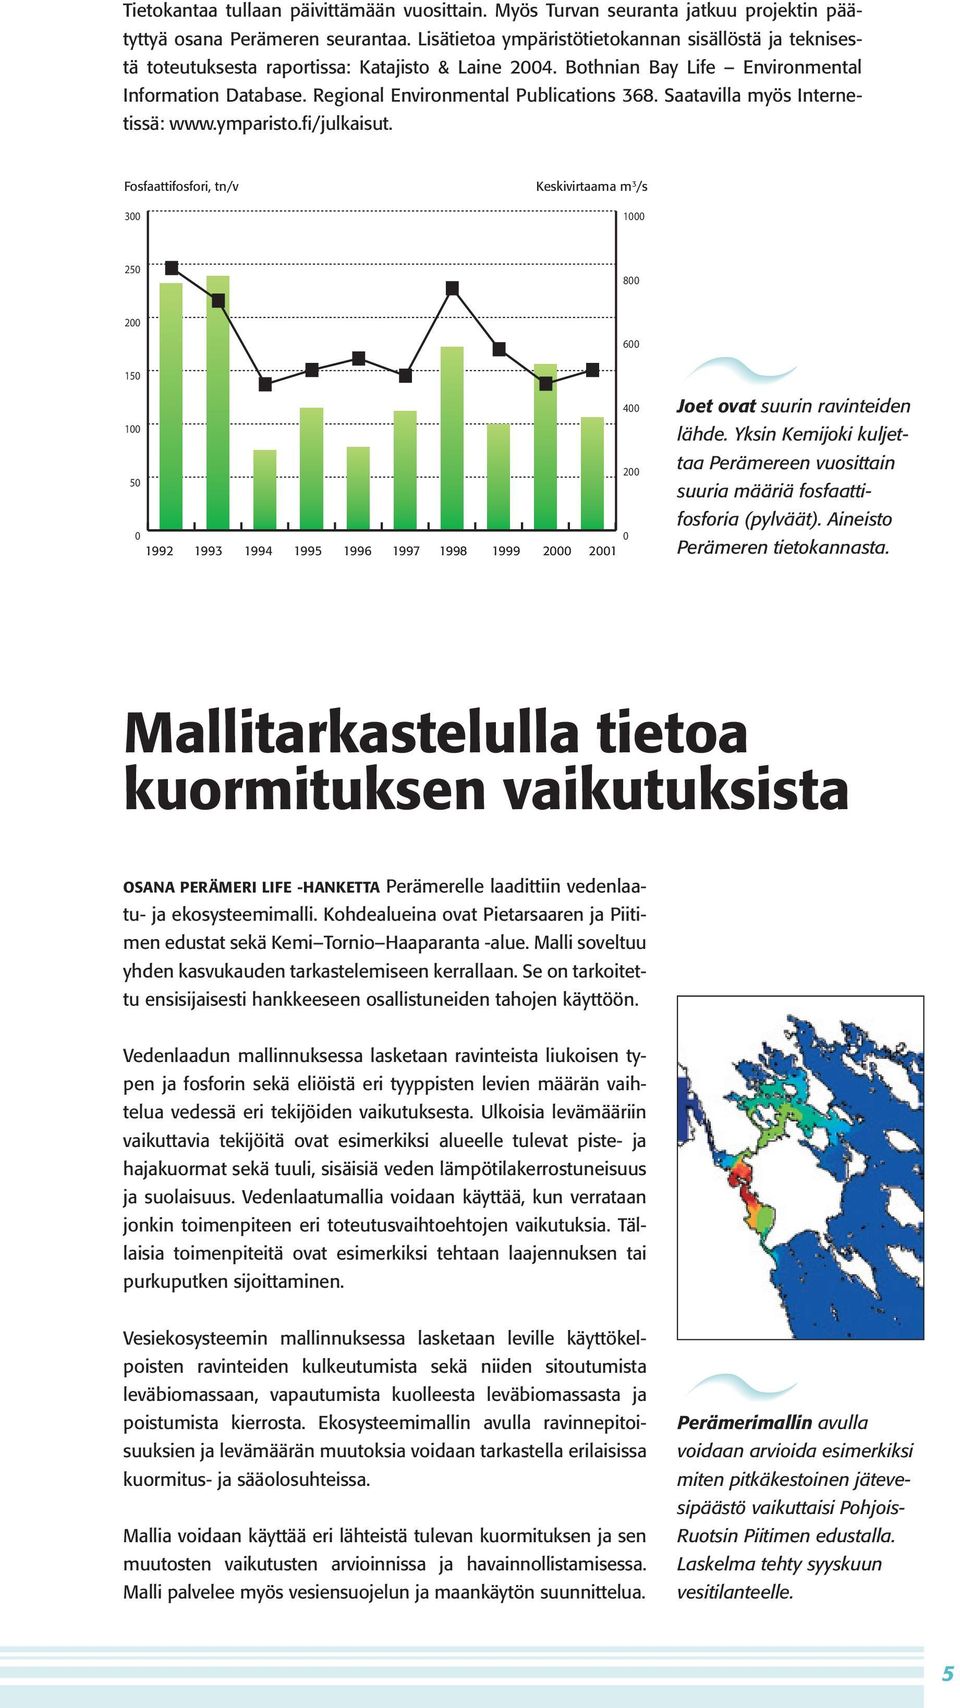 Regional Environmental Publications 368. Saatavilla myös Internetissä: www.ymparisto.fi/julkaisut. Joet ovat suurin ravinteiden lähde.